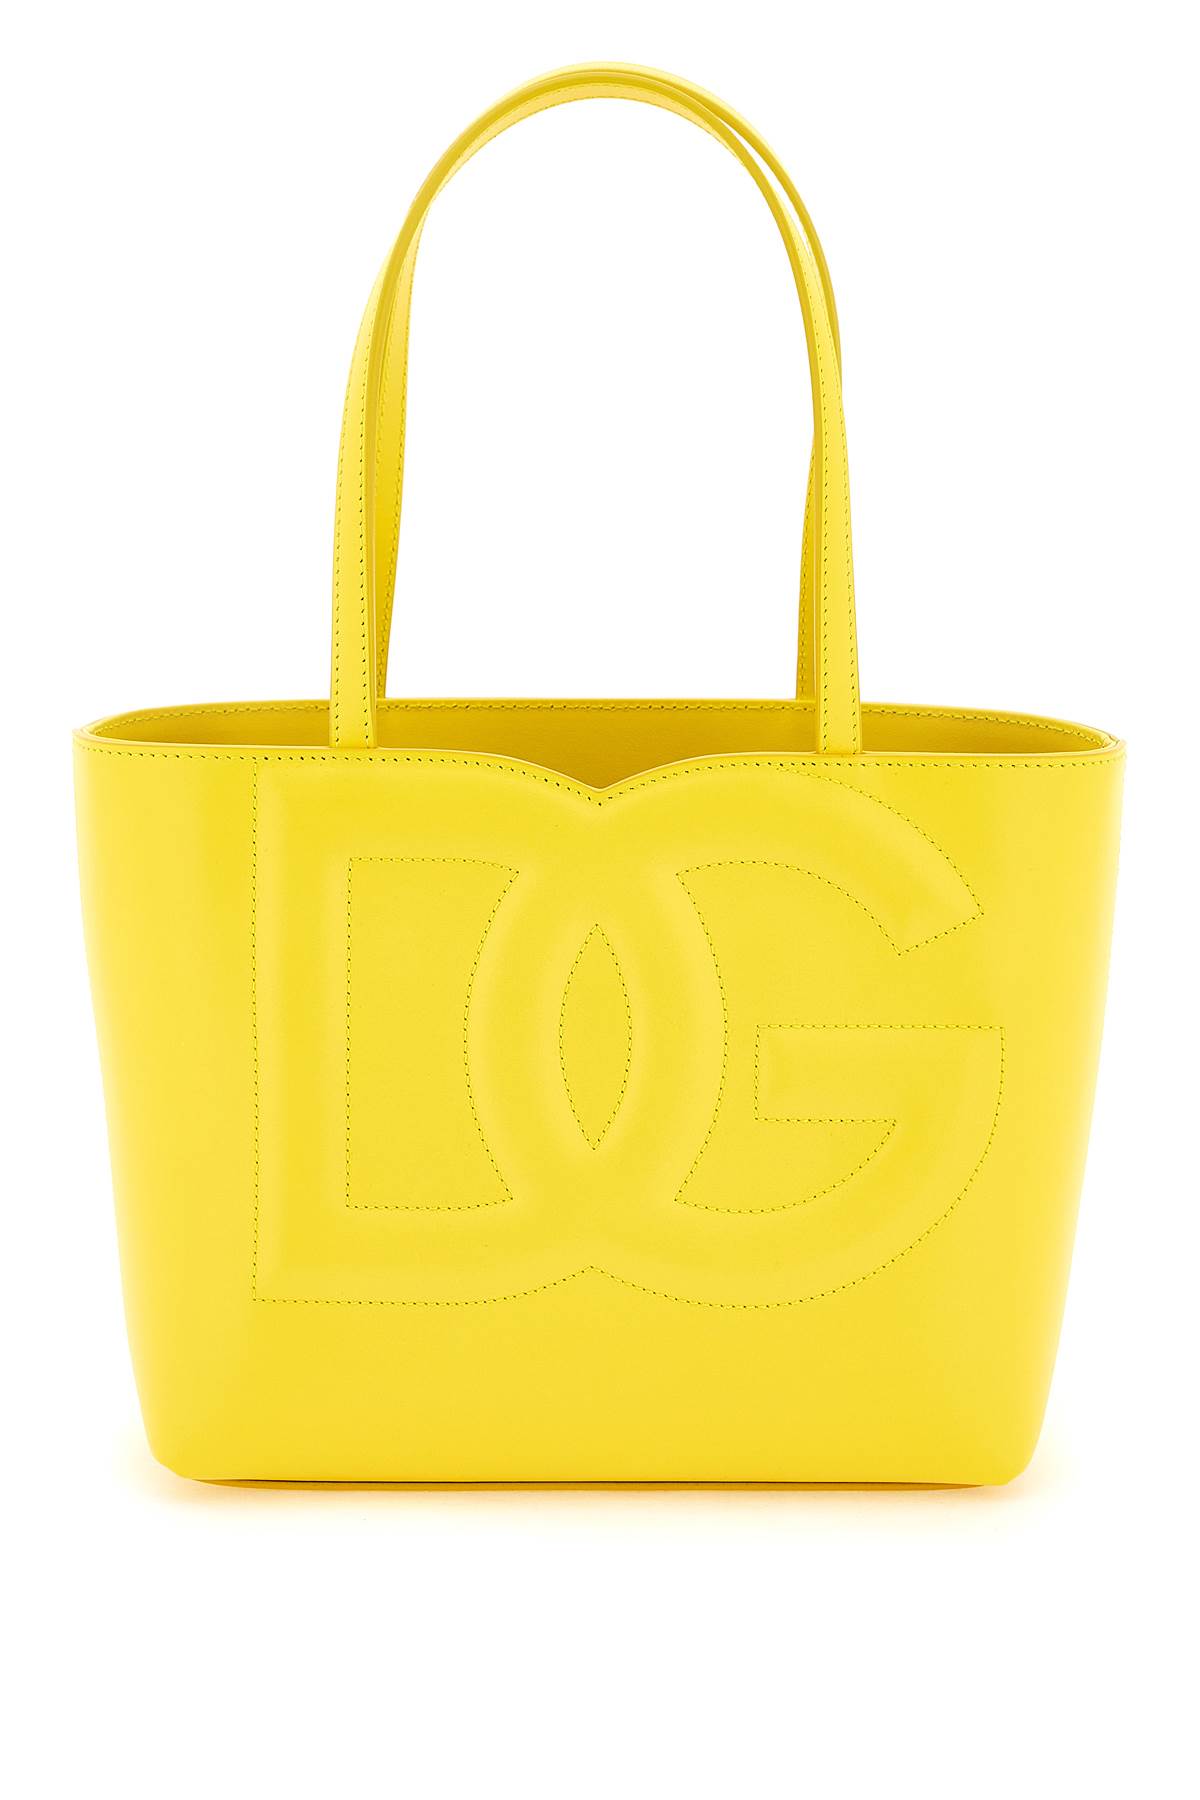 Dolce & Gabbana Logo Shopping Bag In Yellow